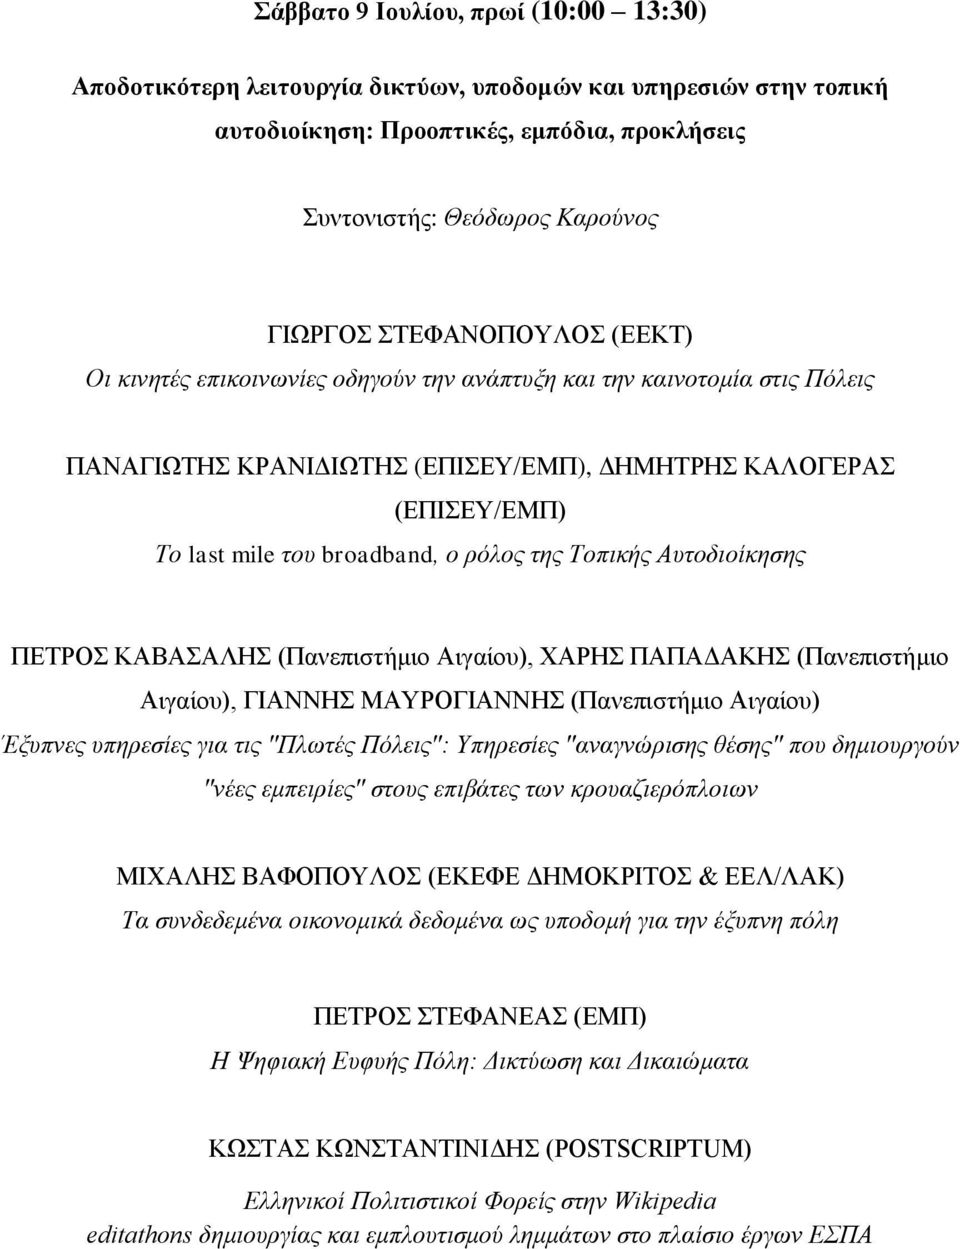 ρόλος της Τοπικής Αυτοδιοίκησης ΠΕΤΡΟΣ ΚΑΒΑΣΑΛΗΣ (Πανεπιστήμιο Αιγαίου), ΧΑΡΗΣ ΠΑΠΑΔΑΚΗΣ (Πανεπιστήμιο Αιγαίου), ΓΙΑΝΝΗΣ ΜΑΥΡΟΓΙΑΝΝΗΣ (Πανεπιστήμιο Αιγαίου) Έξυπνες υπηρεσίες για τις "Πλωτές Πόλεις":